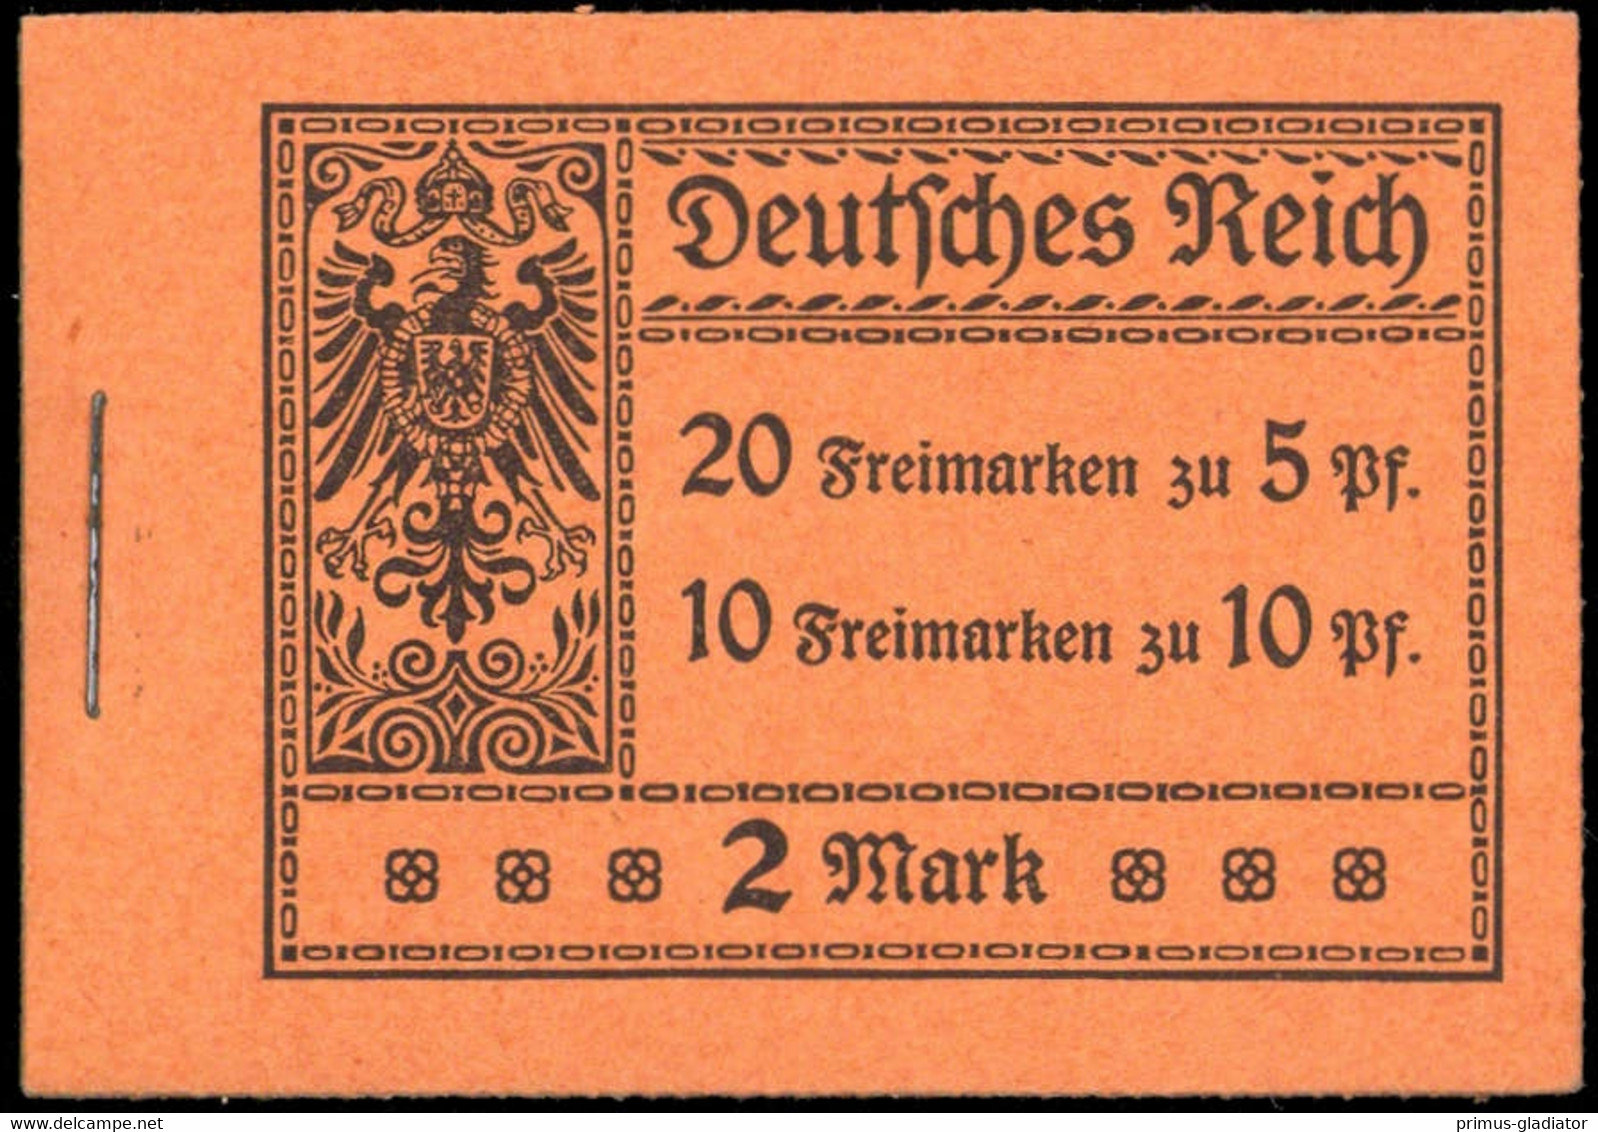 1913, Deutsches Reich, MH 5.19 A, ** - Postzegelboekjes